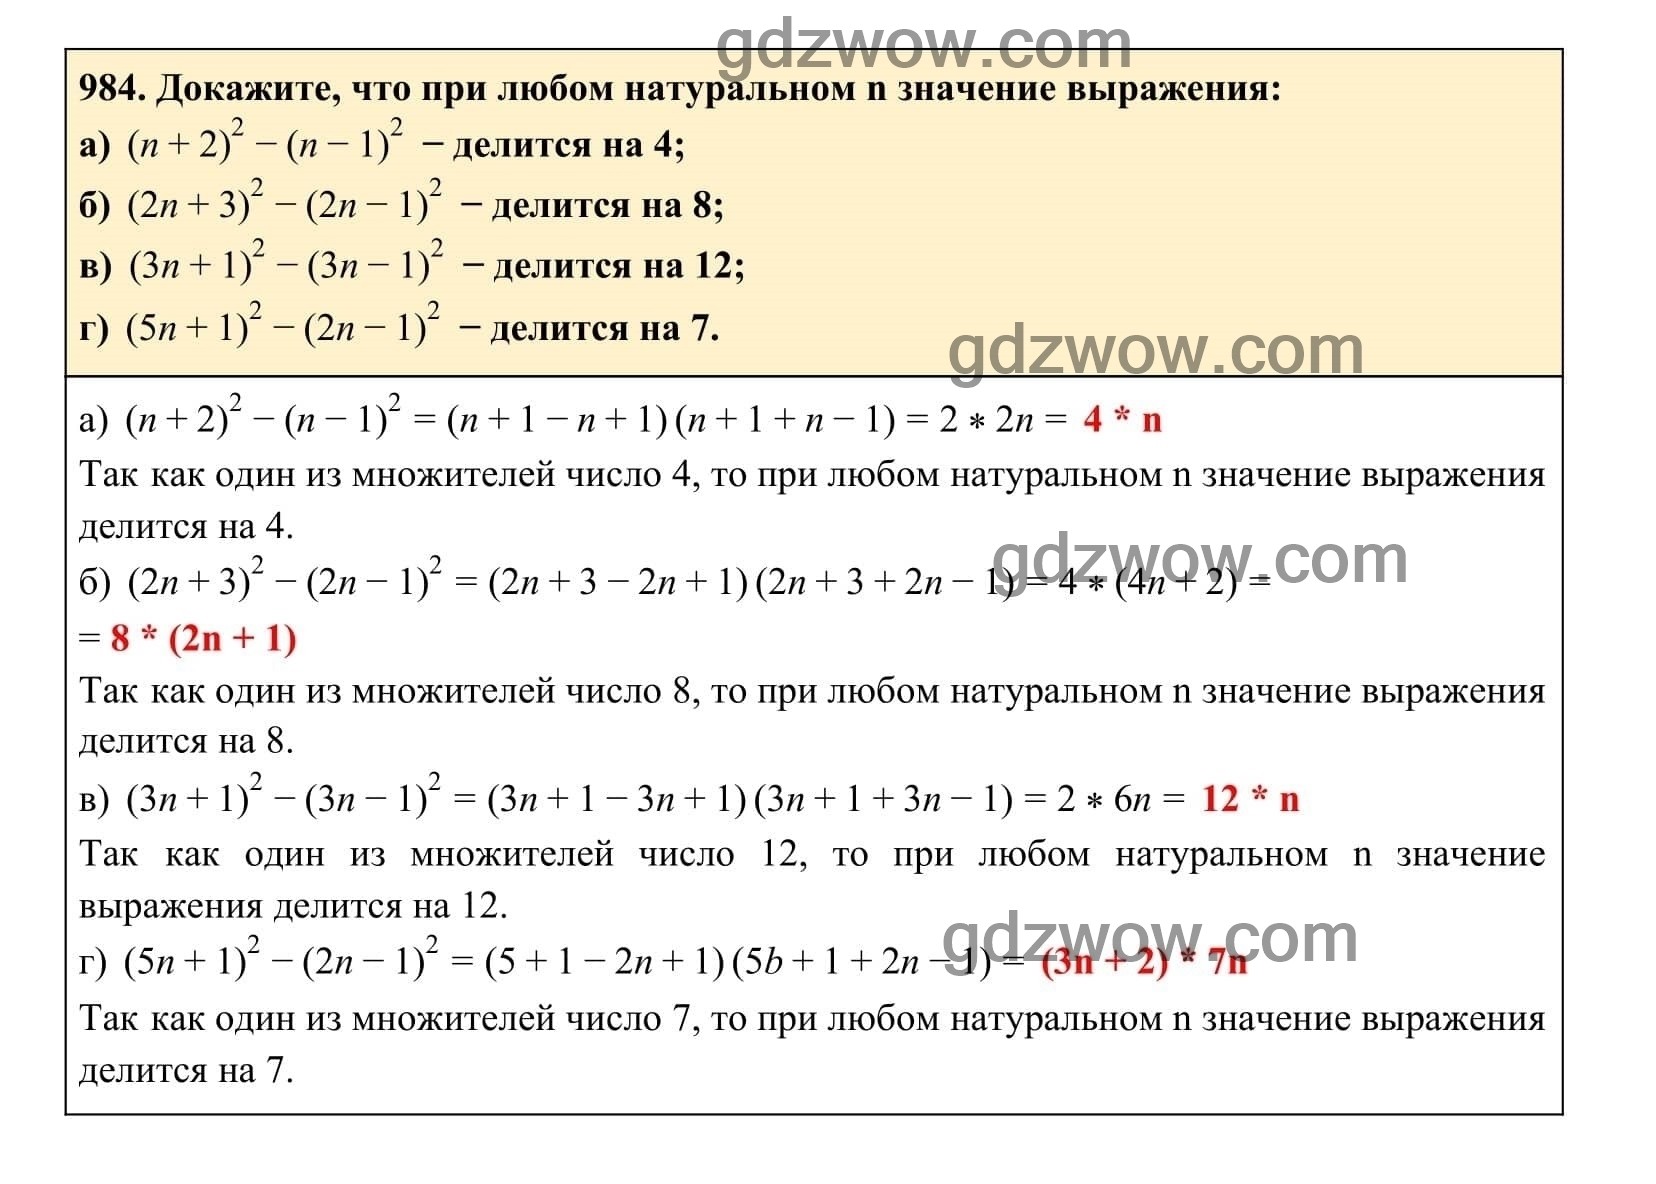 Упражнение 984 - ГДЗ по Алгебре 7 класс Учебник Макарычев (решебник) - GDZwow